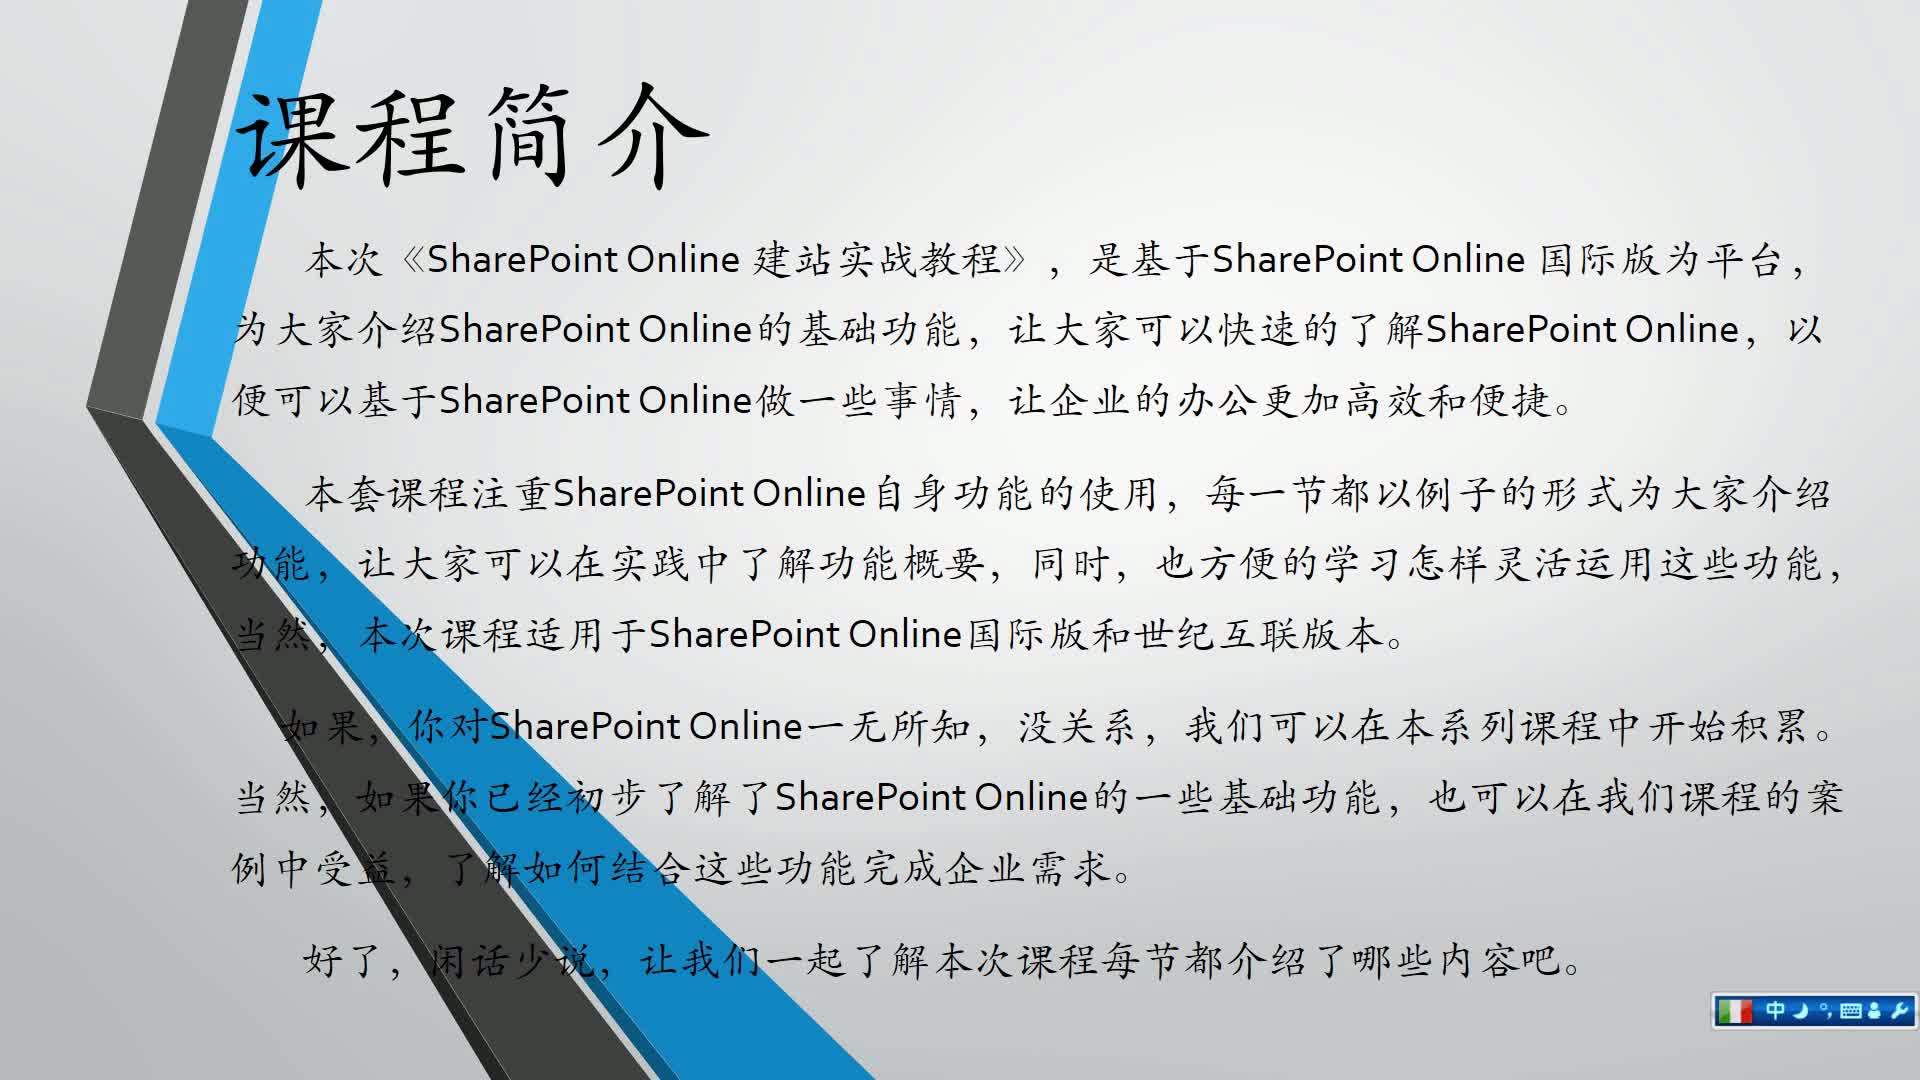 SharePoint Online 建站实战教程（上）